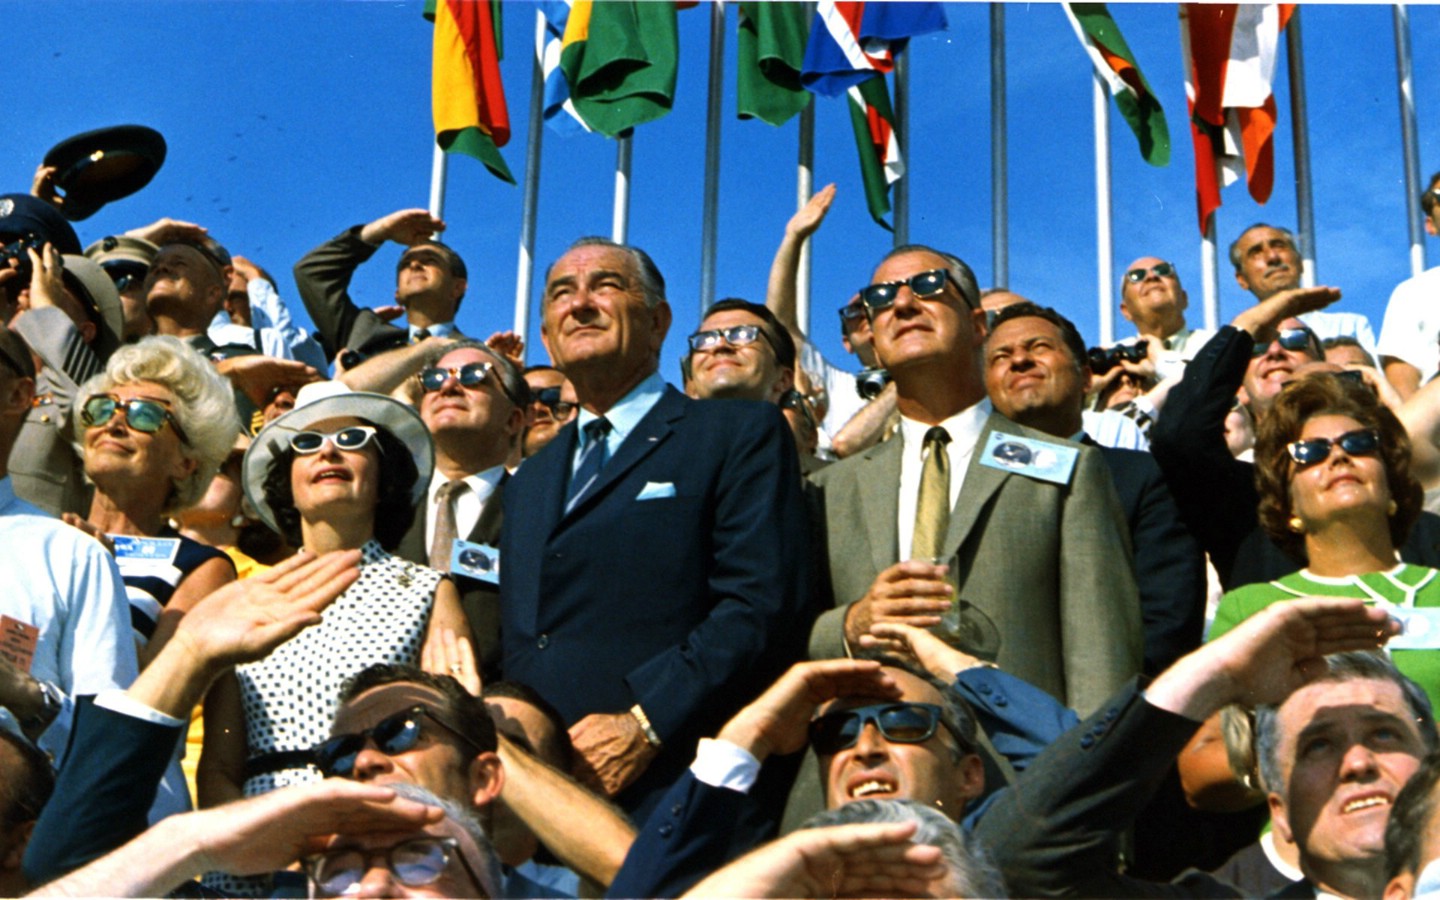 壁纸1440x900One Giant Leap for Mankind  Spiro Agnew and Lyndon Johnson Watch the Apollo 11 Liftoff 斯皮罗 阿格纽和林登 约翰逊壁纸 阿波罗11号登月40周年纪念壁纸壁纸 阿波罗11号登月40周年纪念壁纸图片 阿波罗11号登月40周年纪念壁纸素材 人文壁纸 人文图库 人文图片素材桌面壁纸